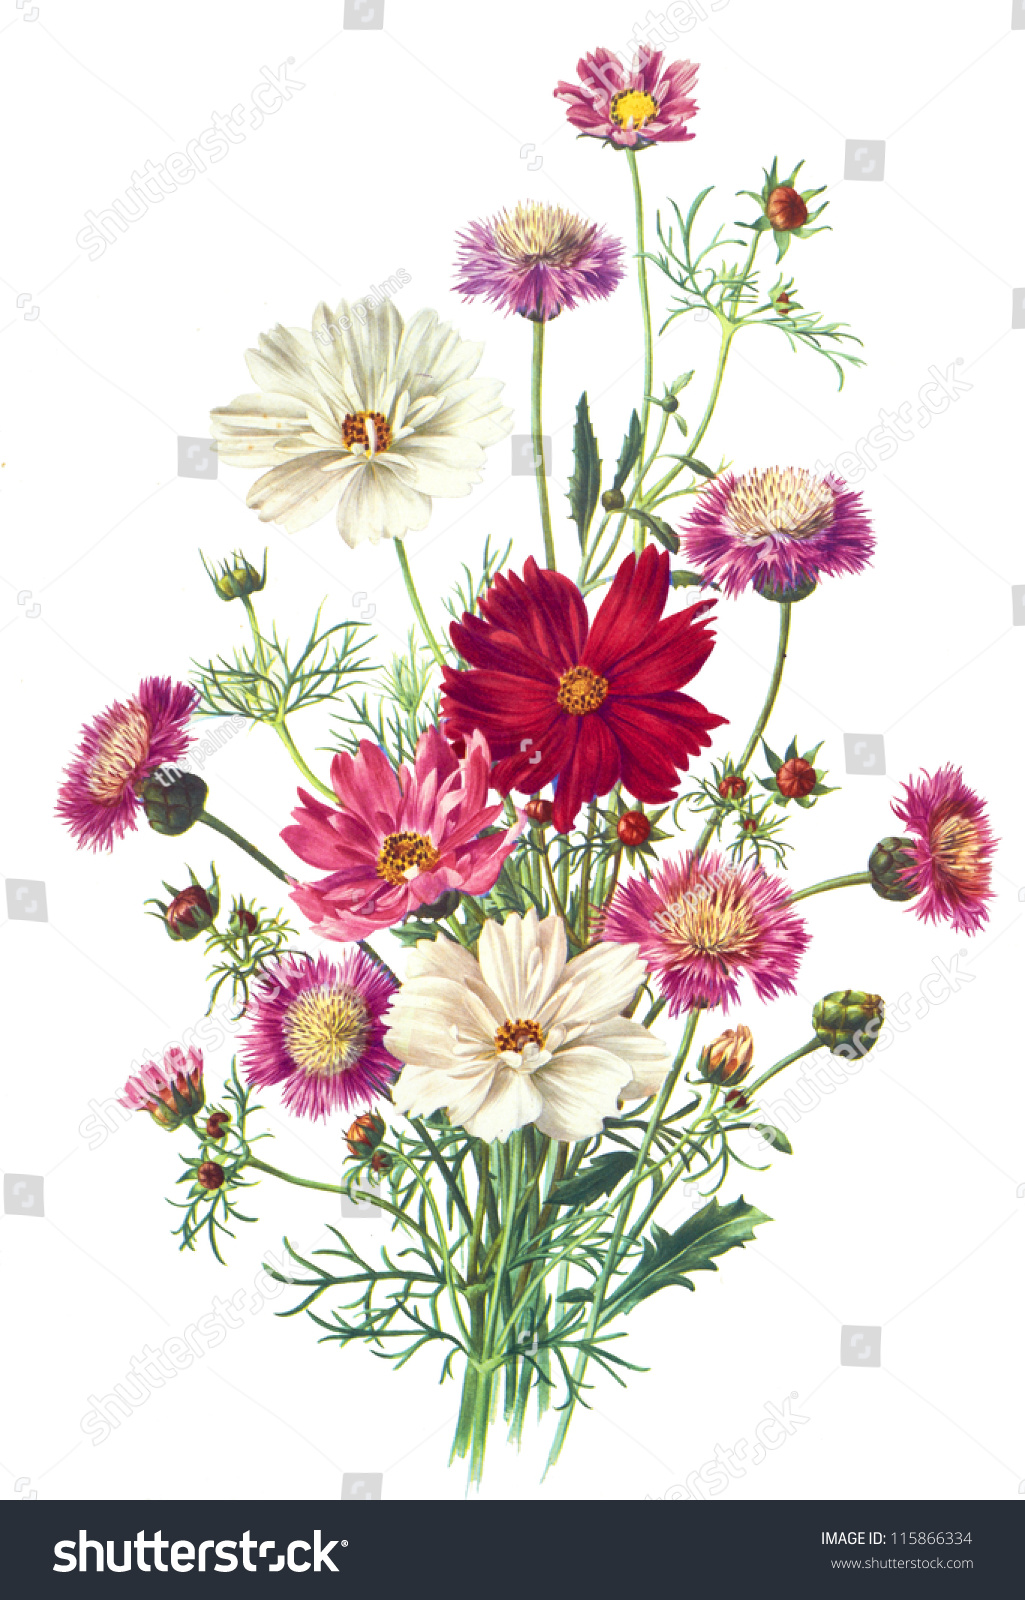 Flower Illustration - 115866334 : Shutterstock